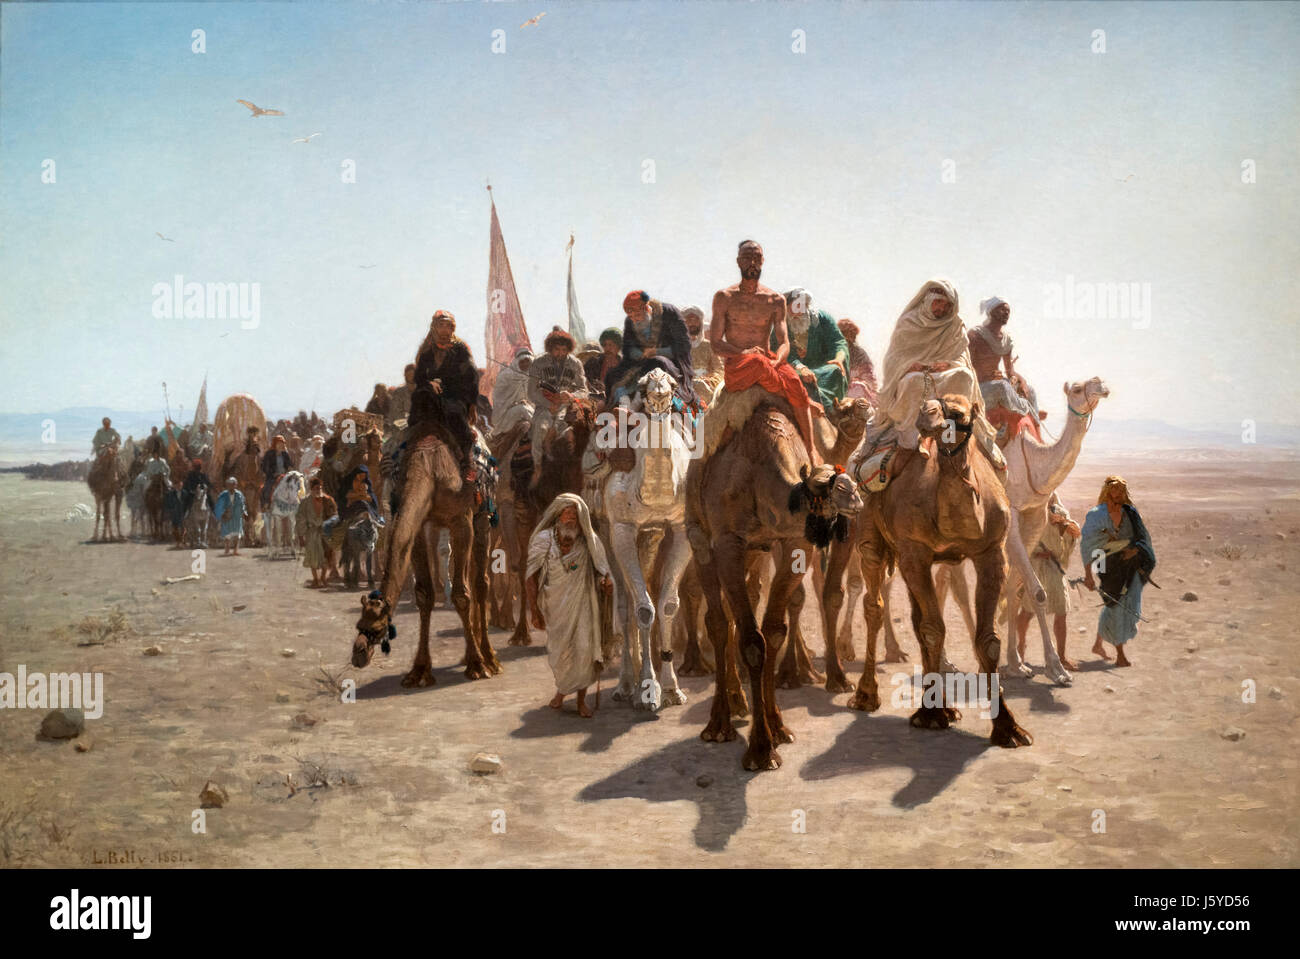 Pélerins allant à la Mecque (Pilgrims going to Mecca) by Leon Belly (1827-1877), oil on canvas, 1861 Stock Photo